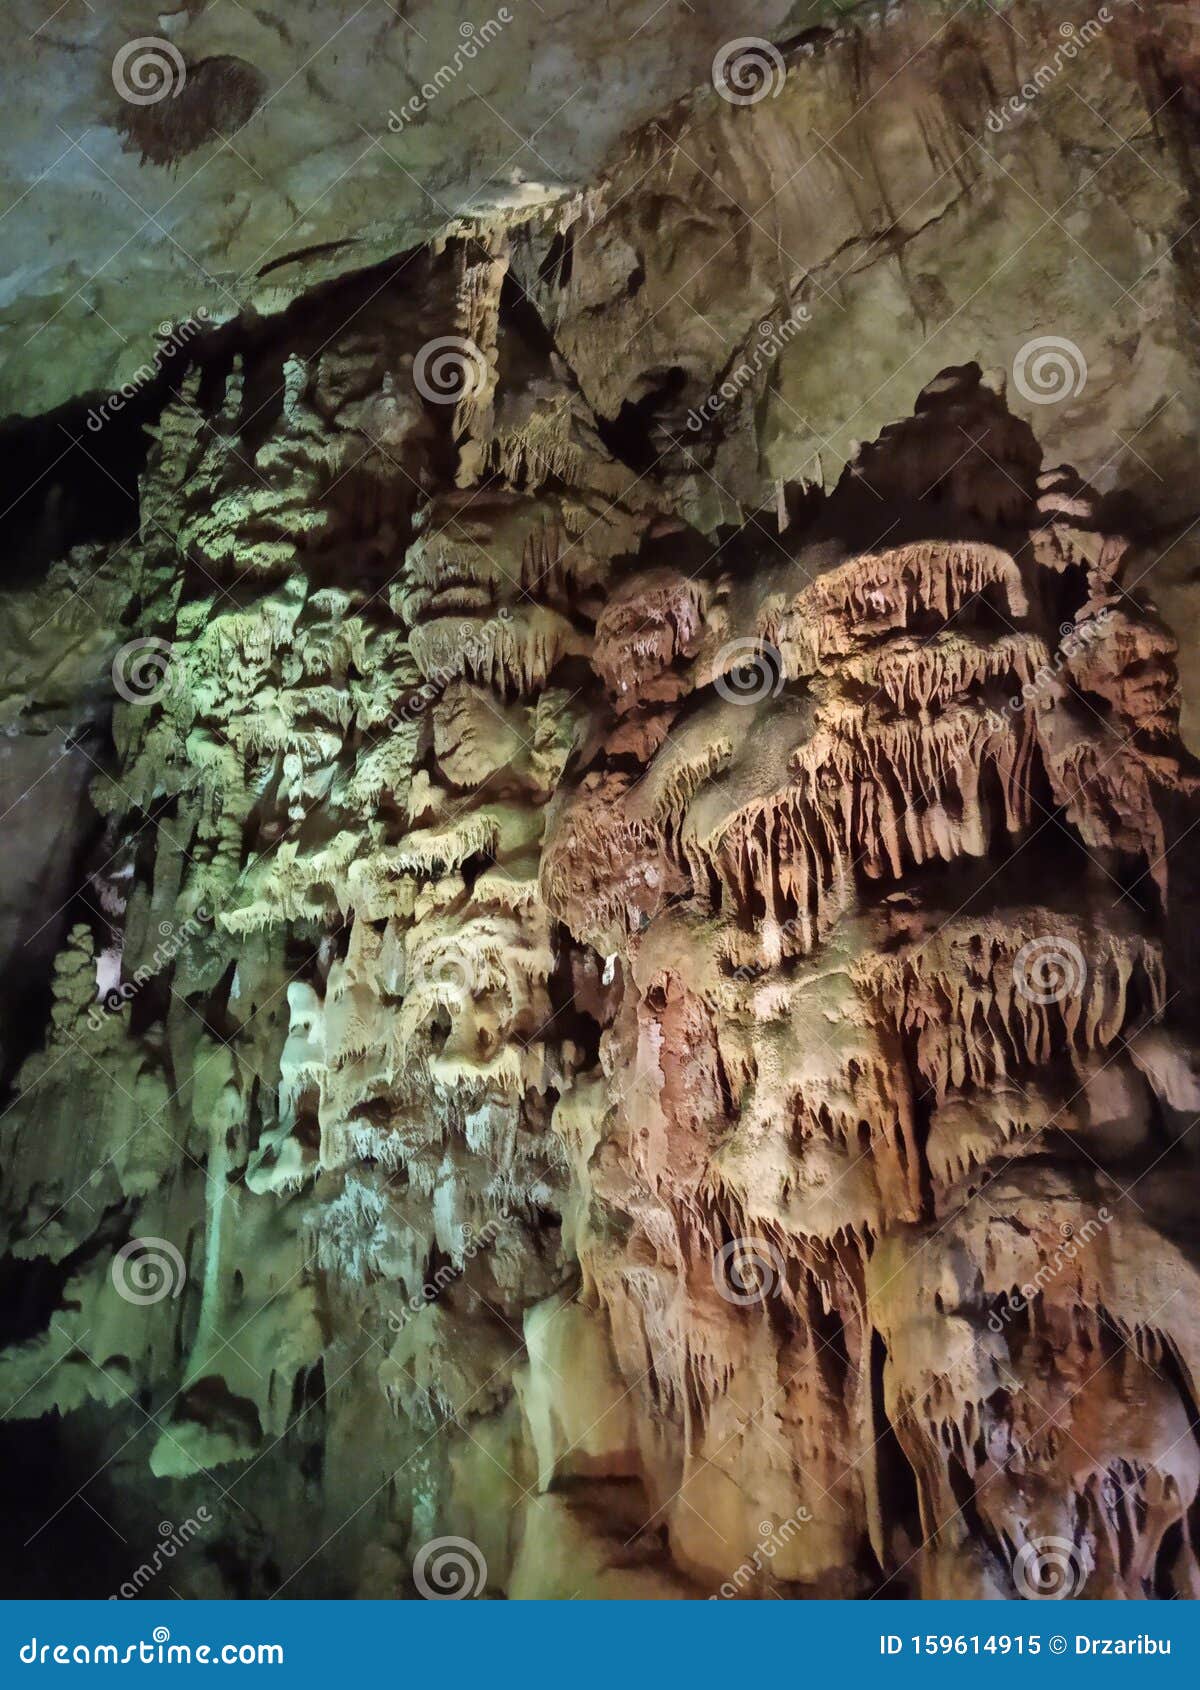 beautiful resava cave